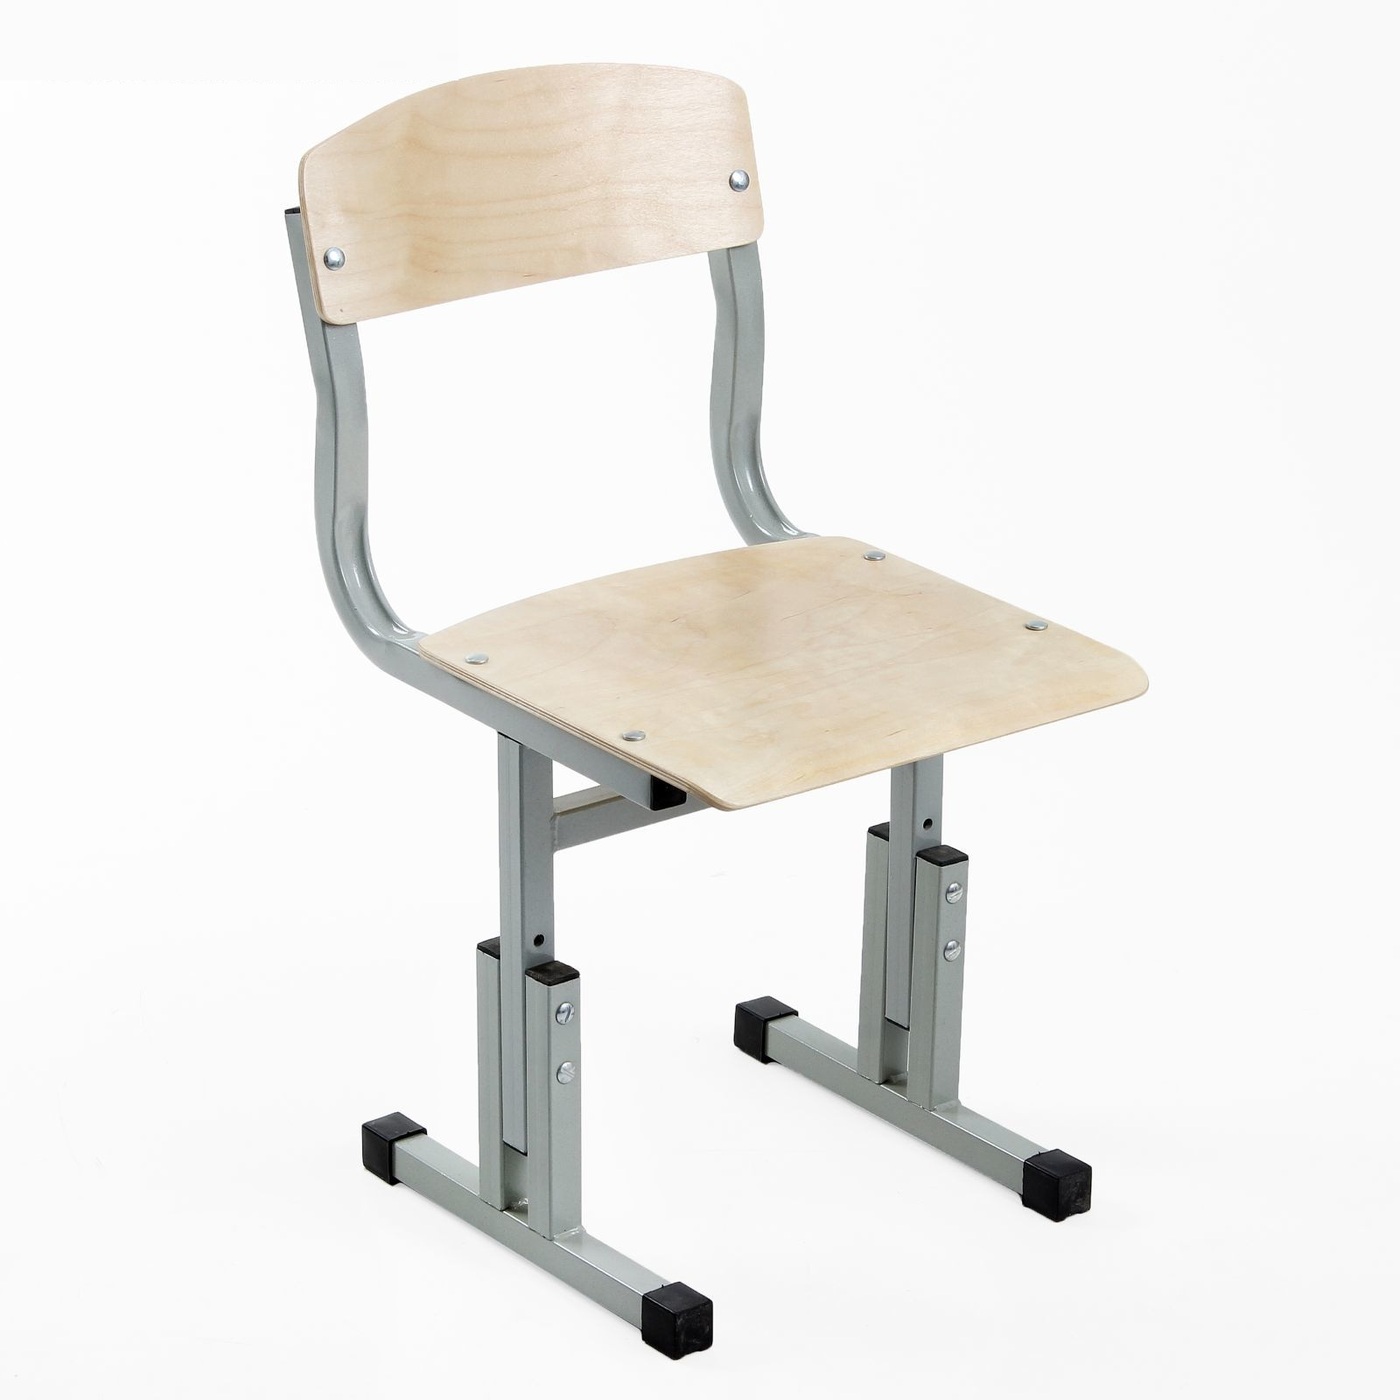 стул для физиотерапии с подлокотниками